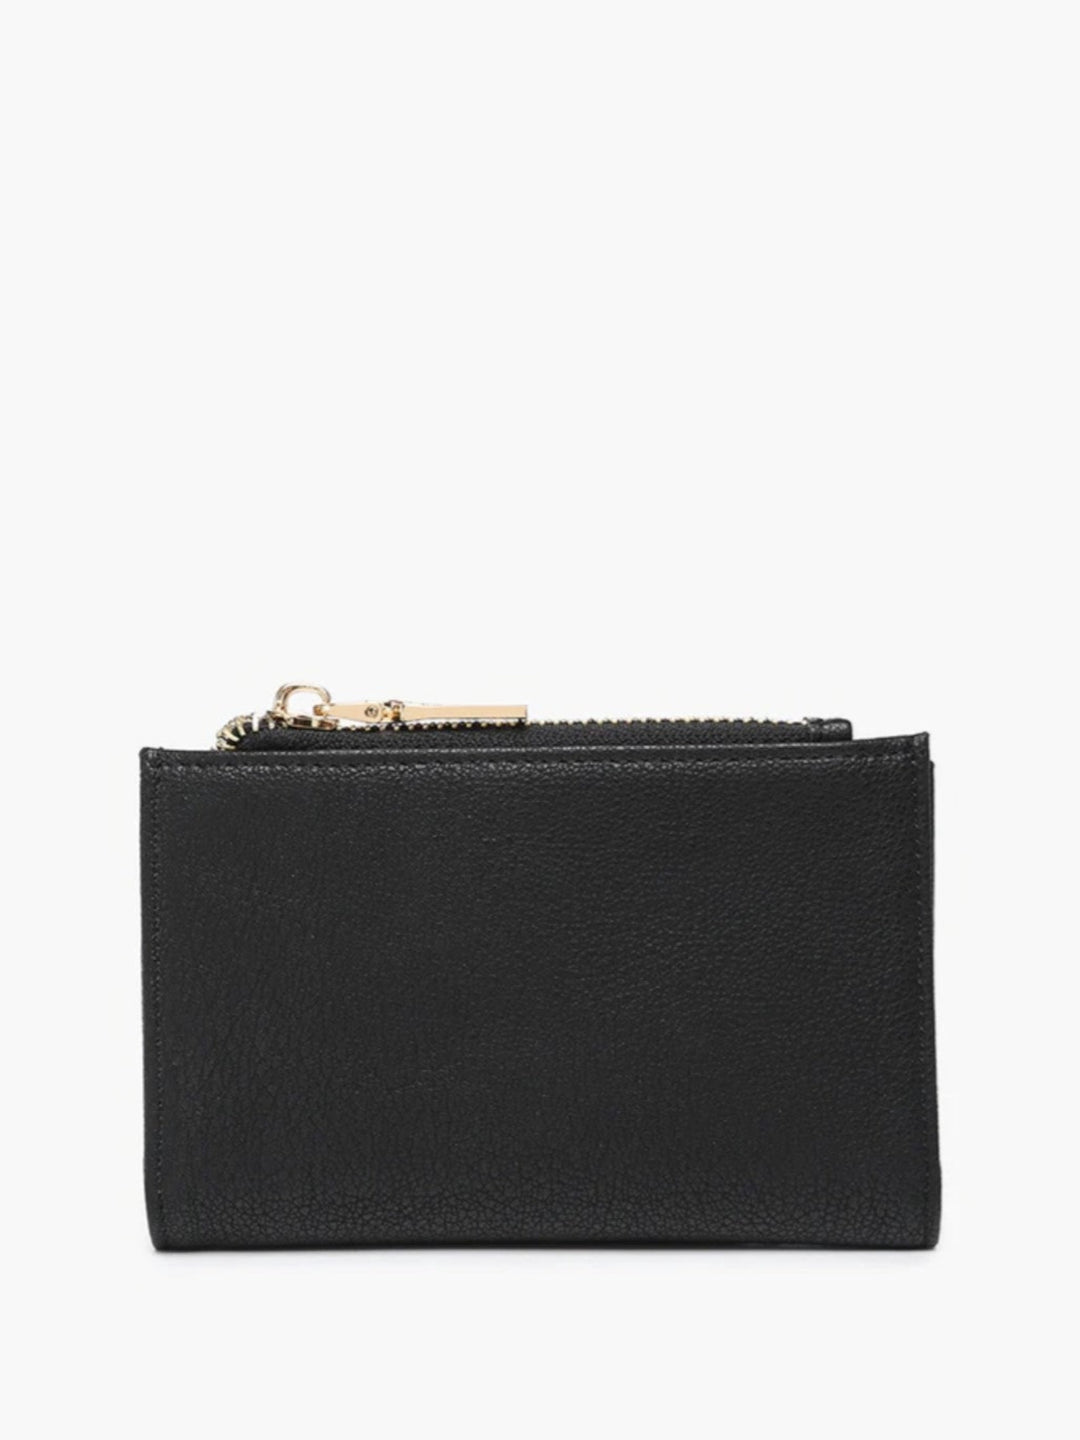 Zara RFID Zip Top Wallet, Black